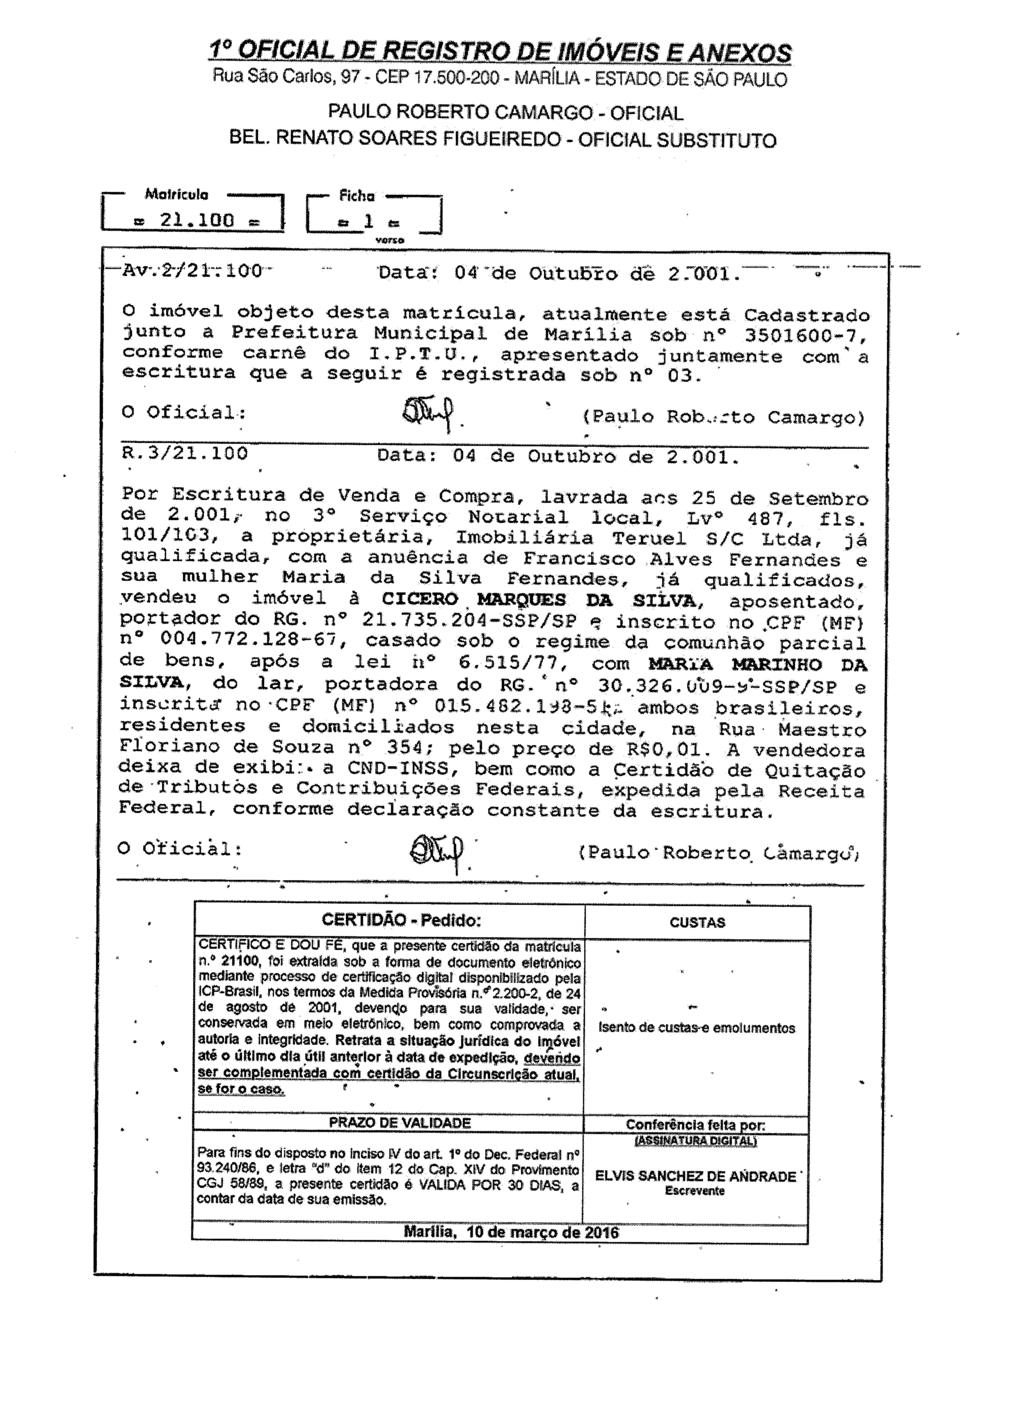 fls. 32 Este documento é cópia do original, assinado digitalmente por ADRIANA DEGANI AKURI, liberado nos autos em 15/03/2016 às 15:54.